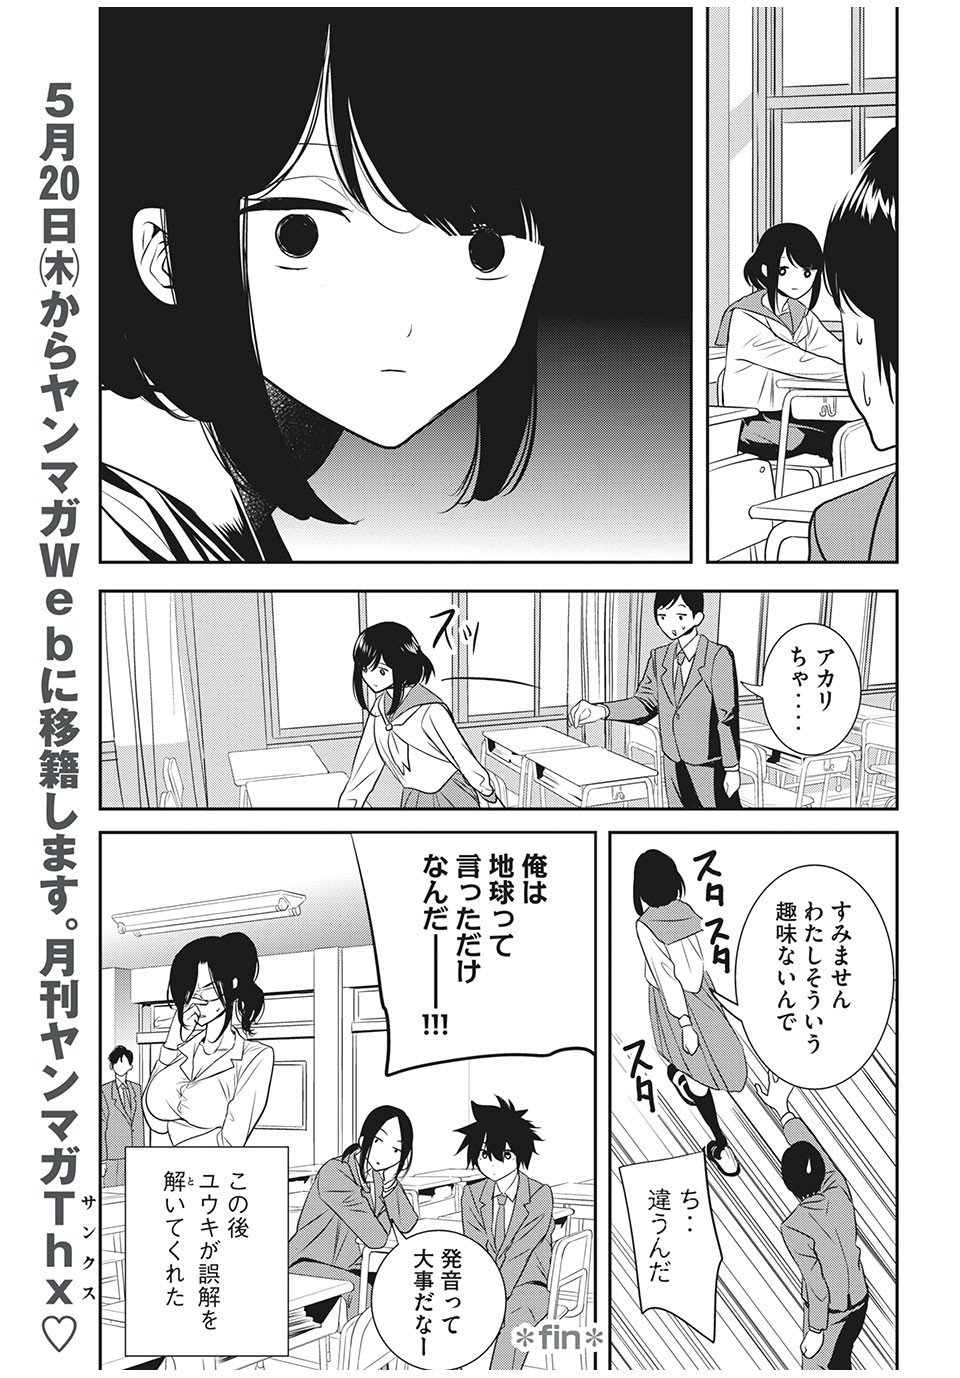 Eigo ×× Sensei - Chapter 18 - Page 5